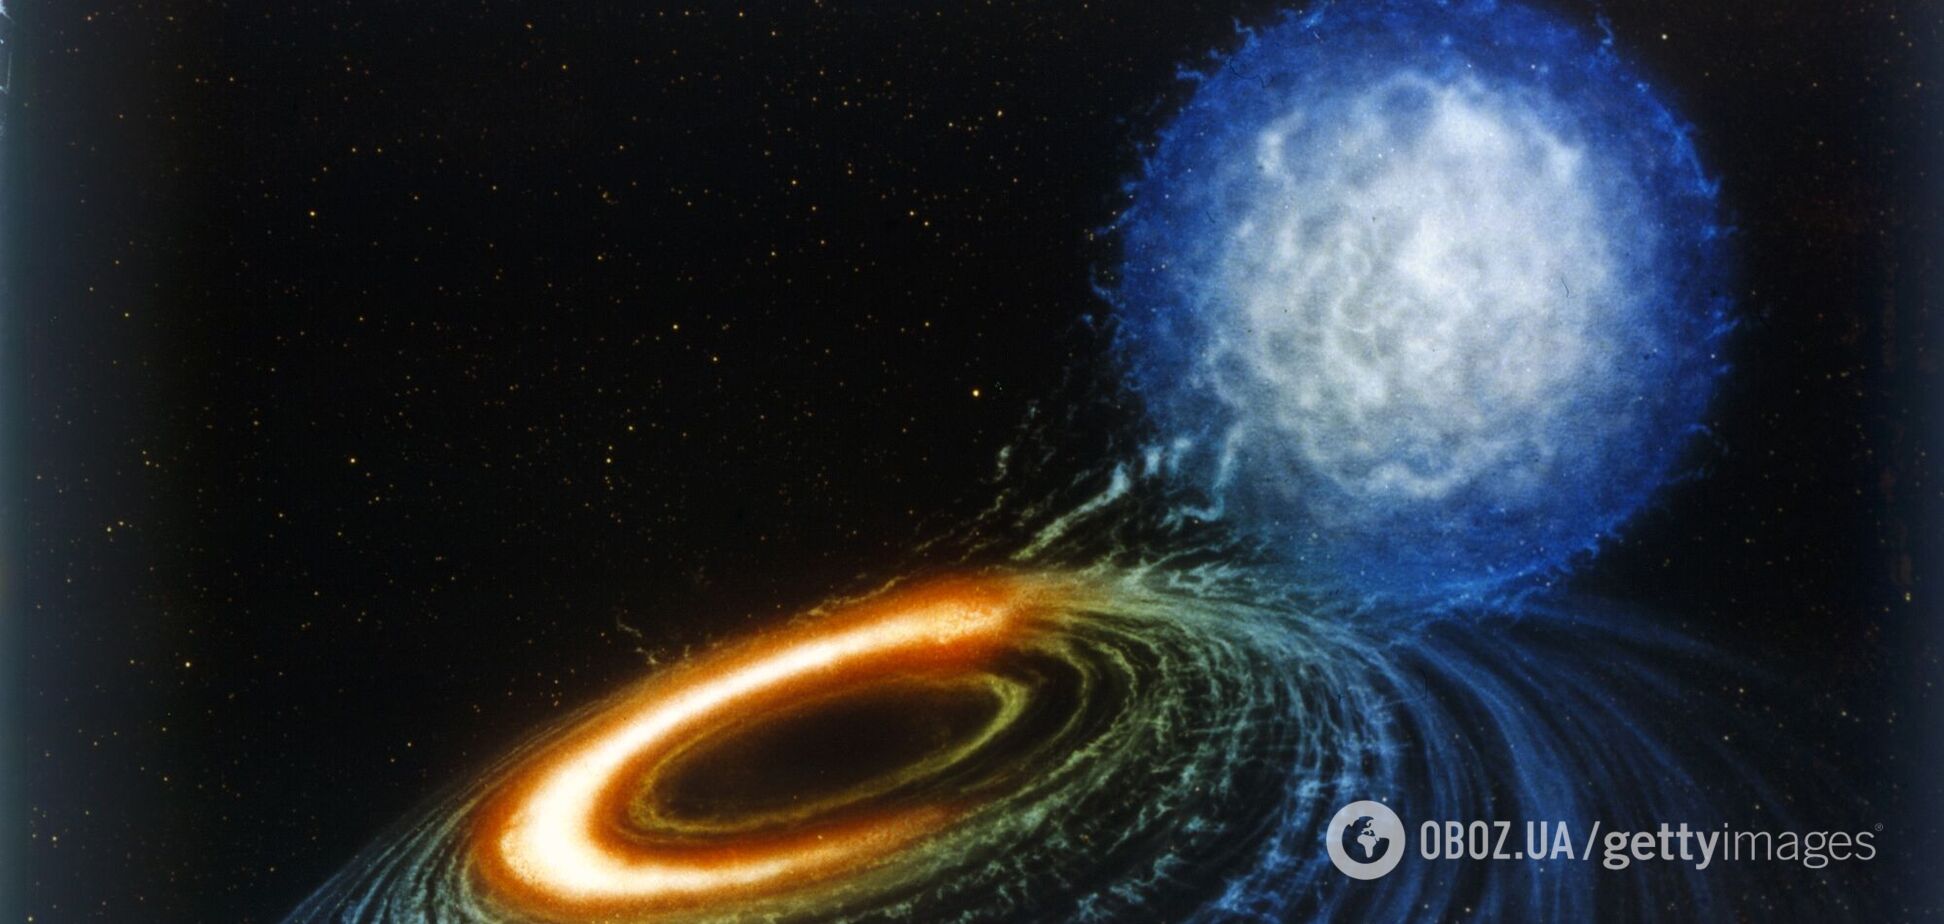 Получено изображение черной дыры, что в 6,5 млрд раз больше массы Солнца